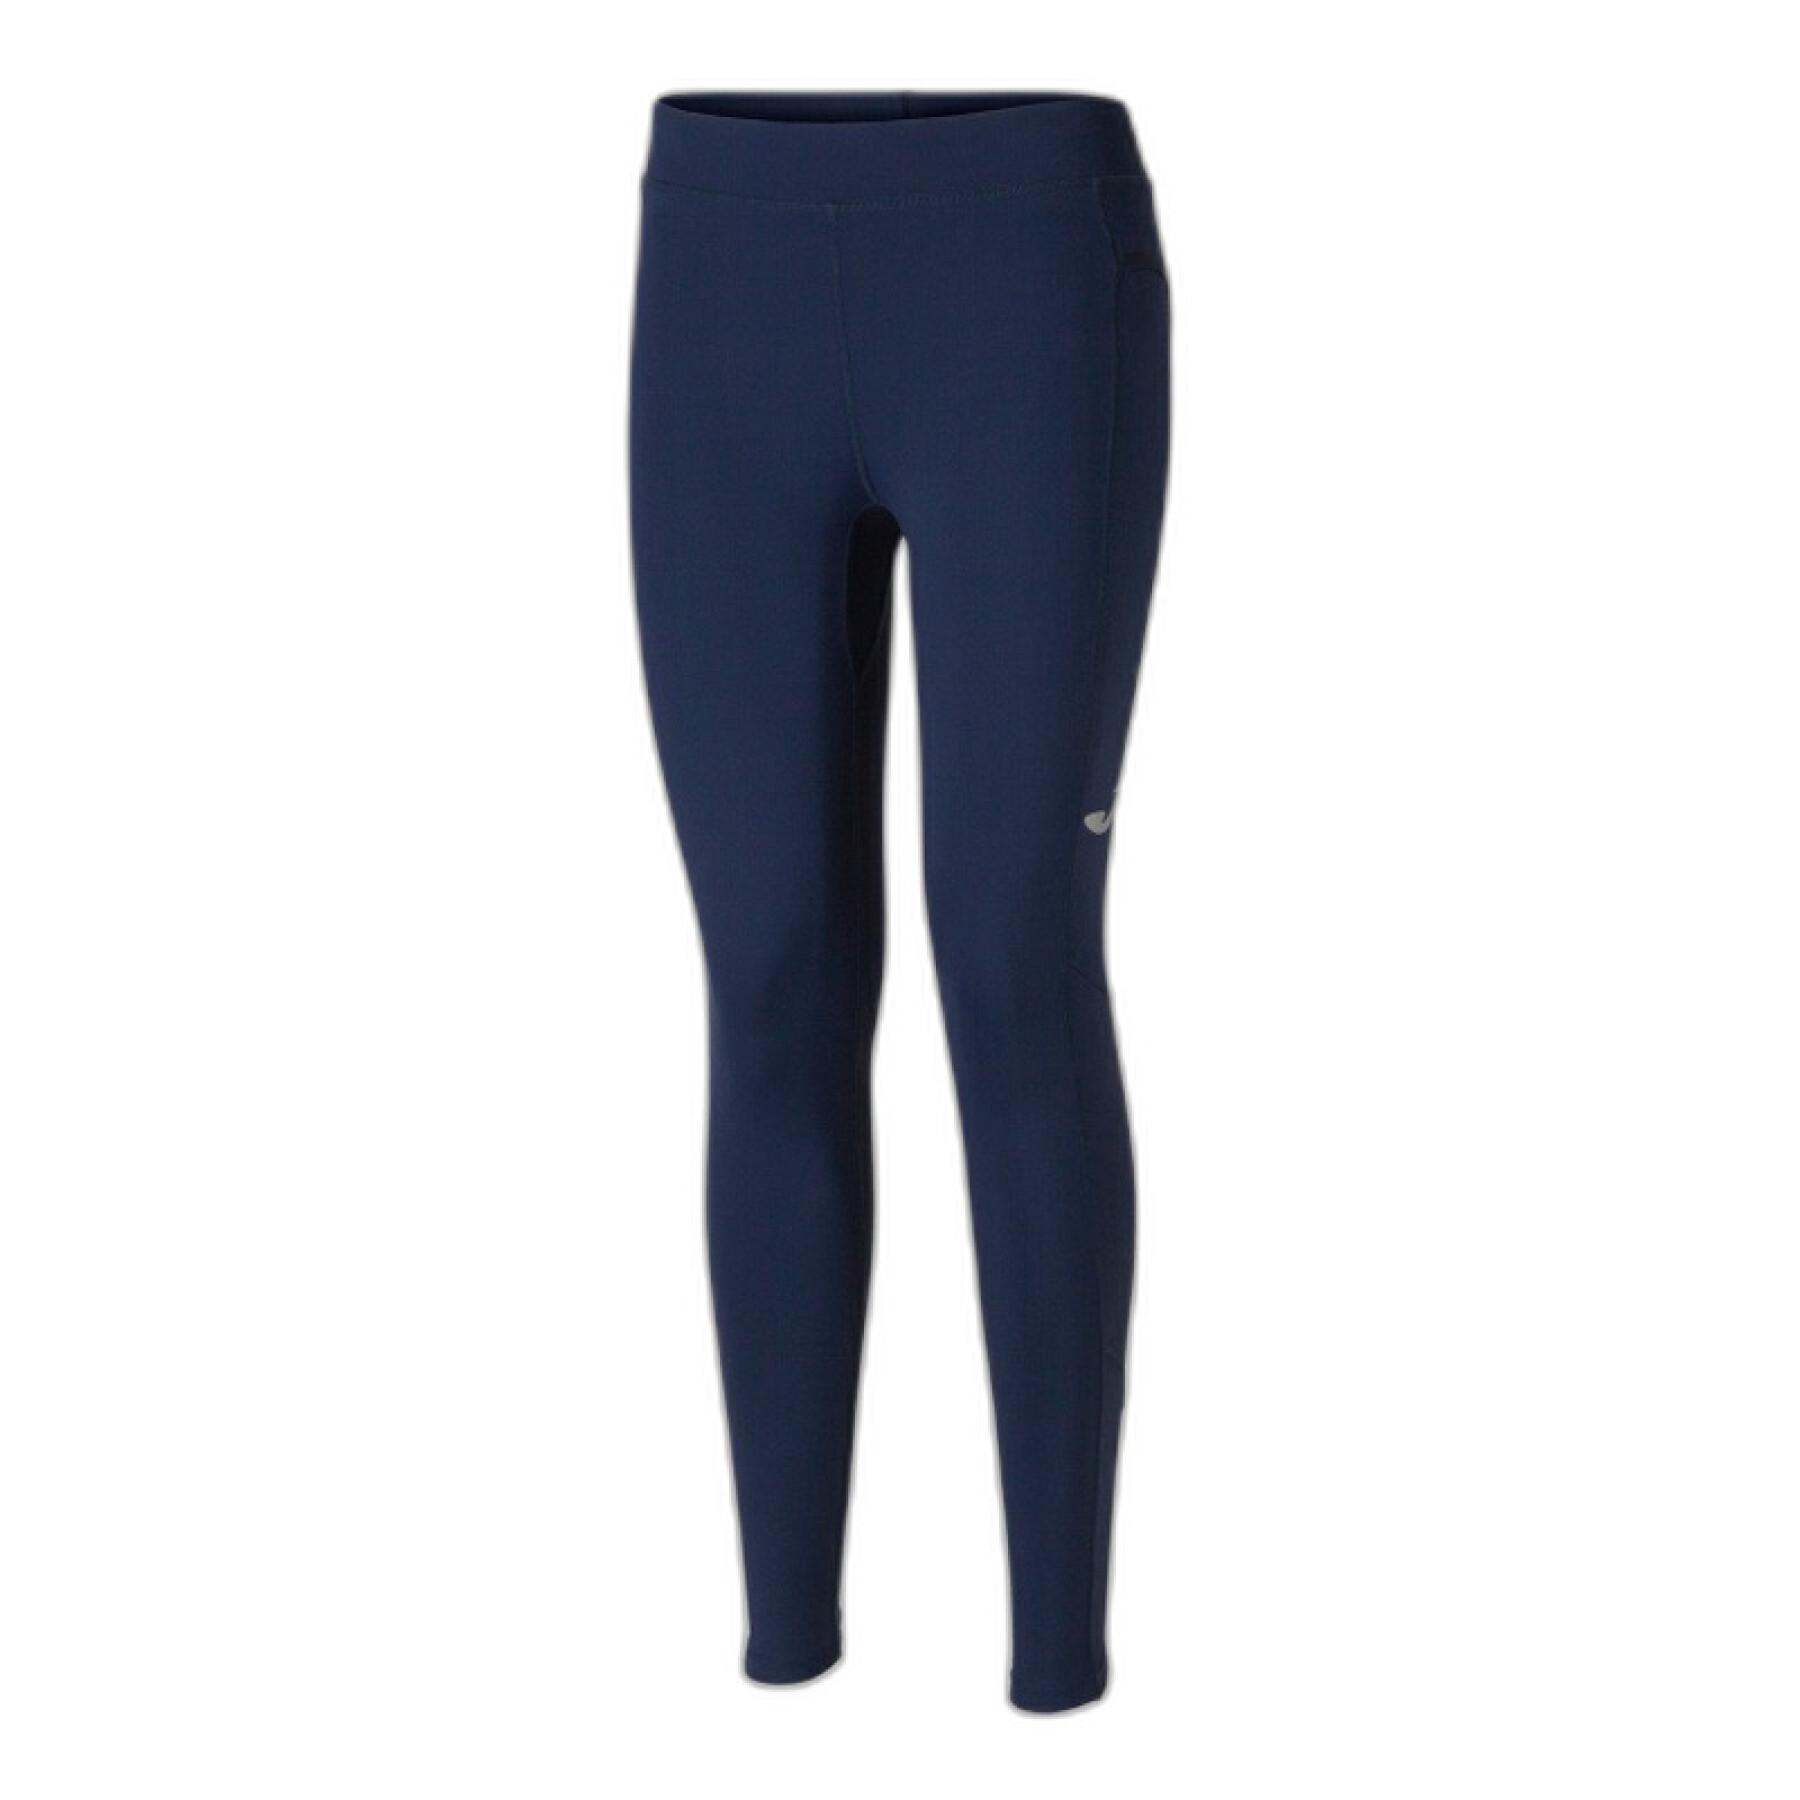 Lululemon Align Pant II 25 size 12 Deep Indigo NWT Navy Blue Gym Yoga  Legging